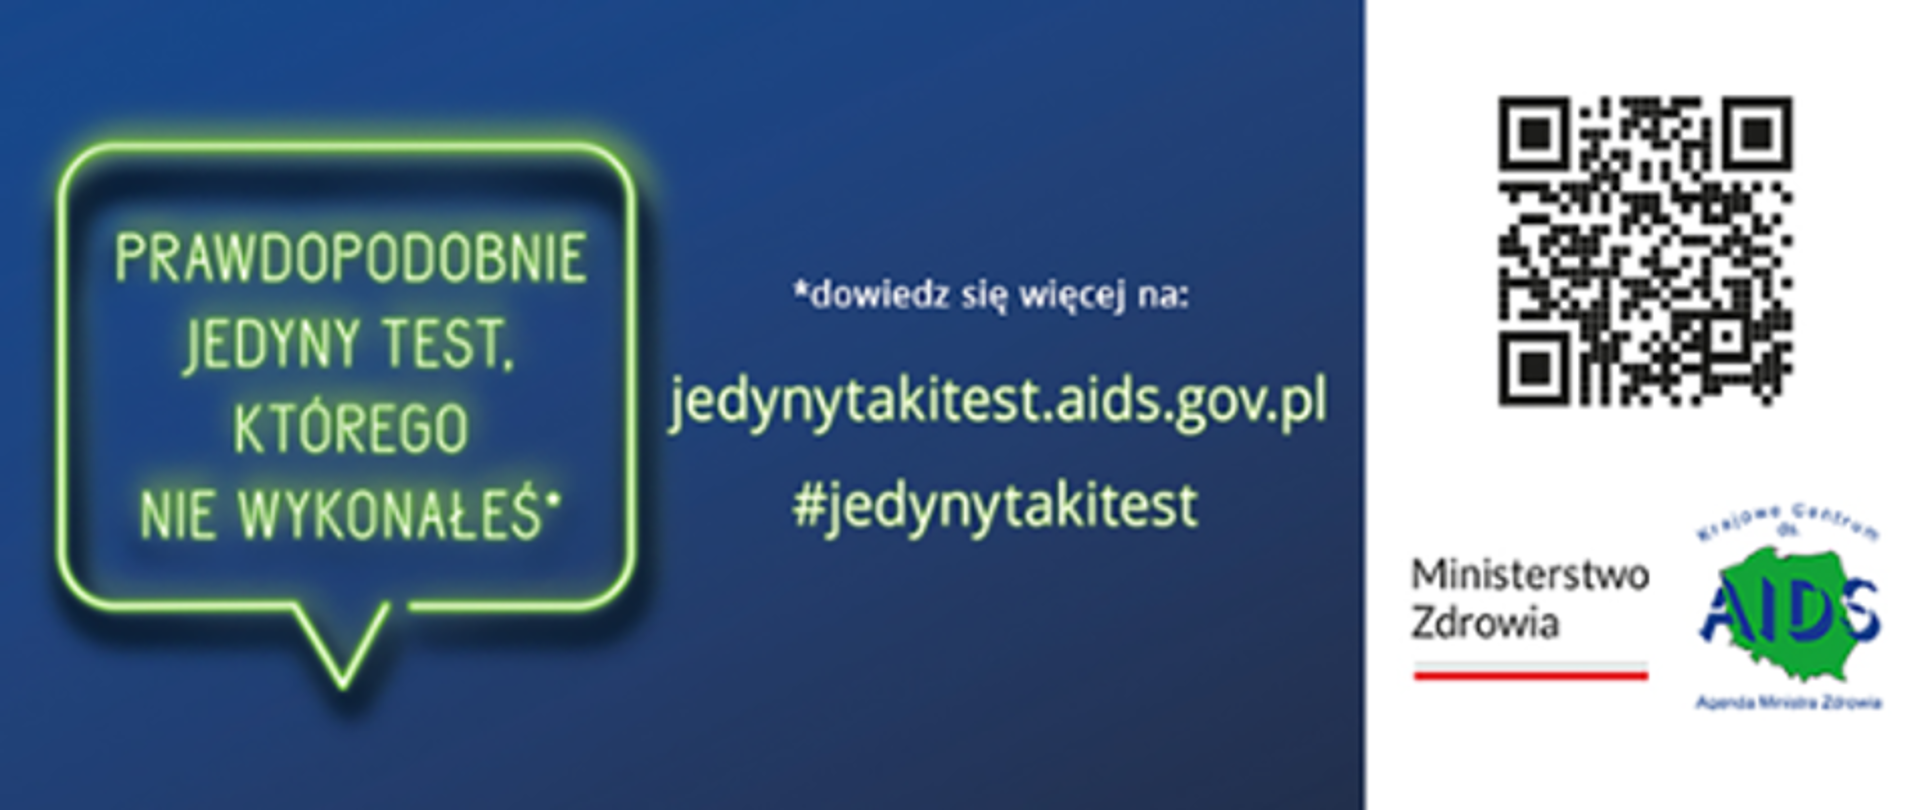 Nowa kampania Krajowego Centrum ds. AIDS pod hasłem „Jedyny taki test” (#jedynytakitest)